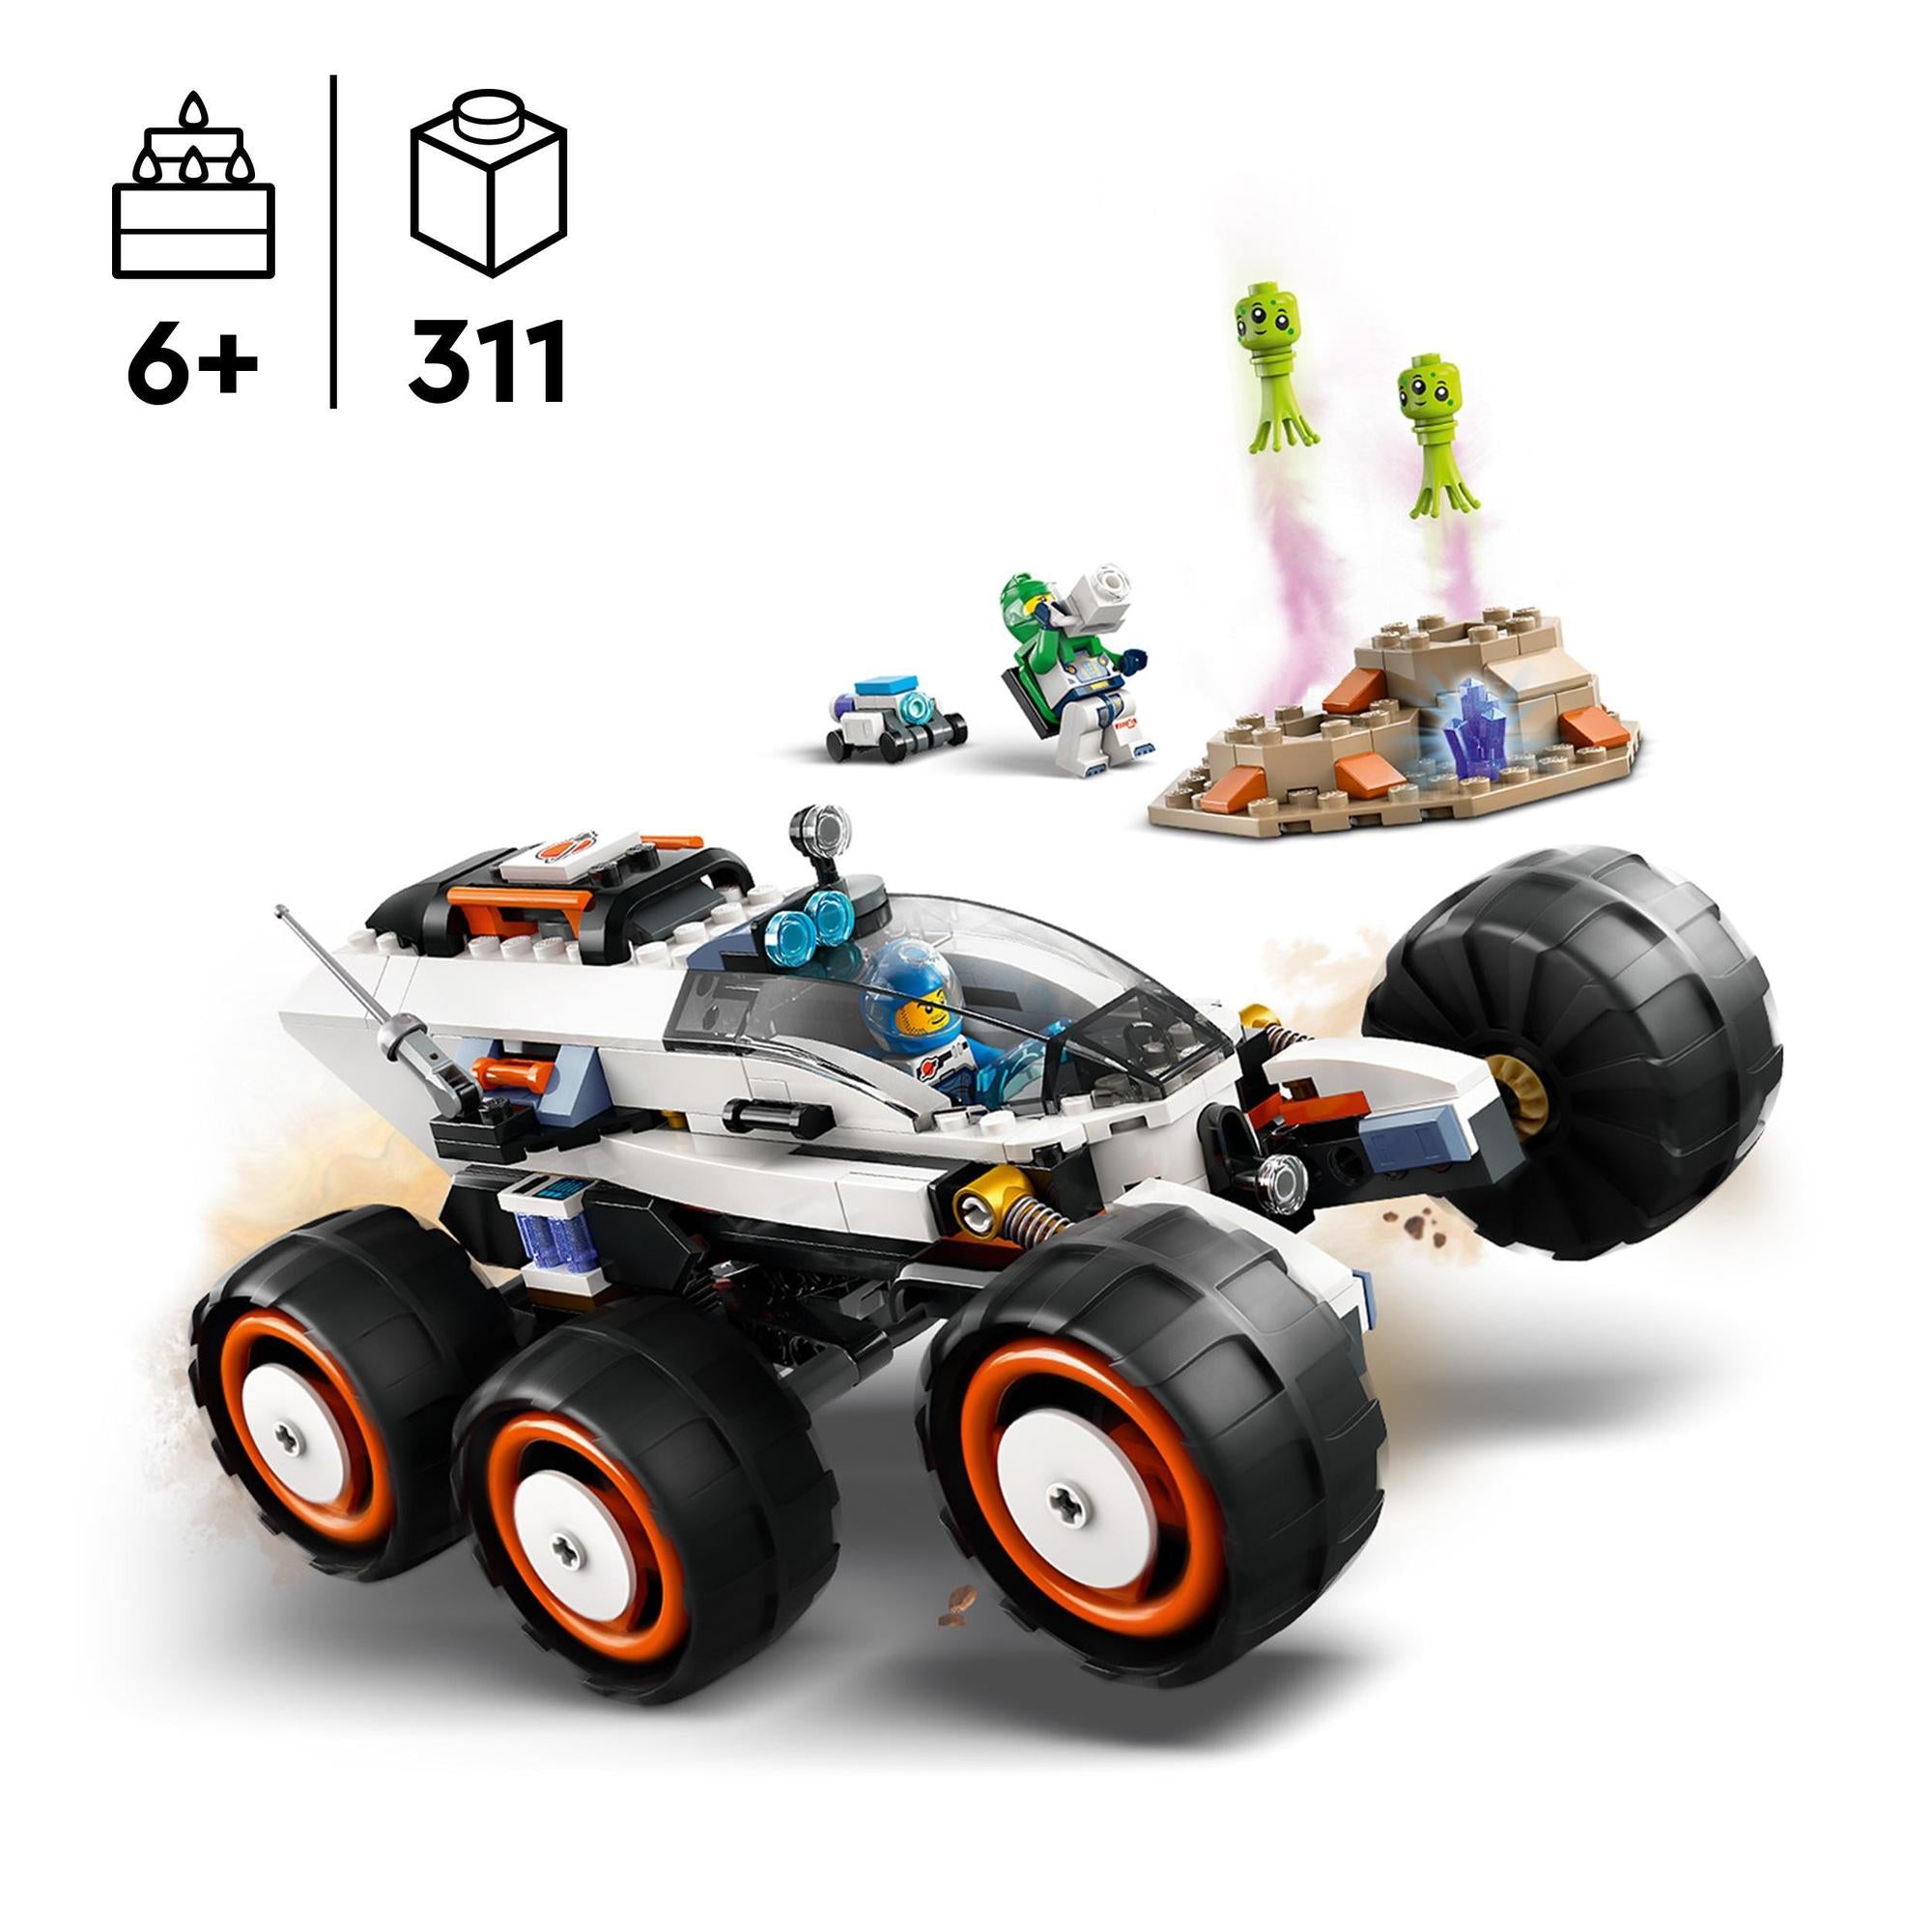 LEGO® | 60431 | Weltraum-Rover mit Außerirdischen